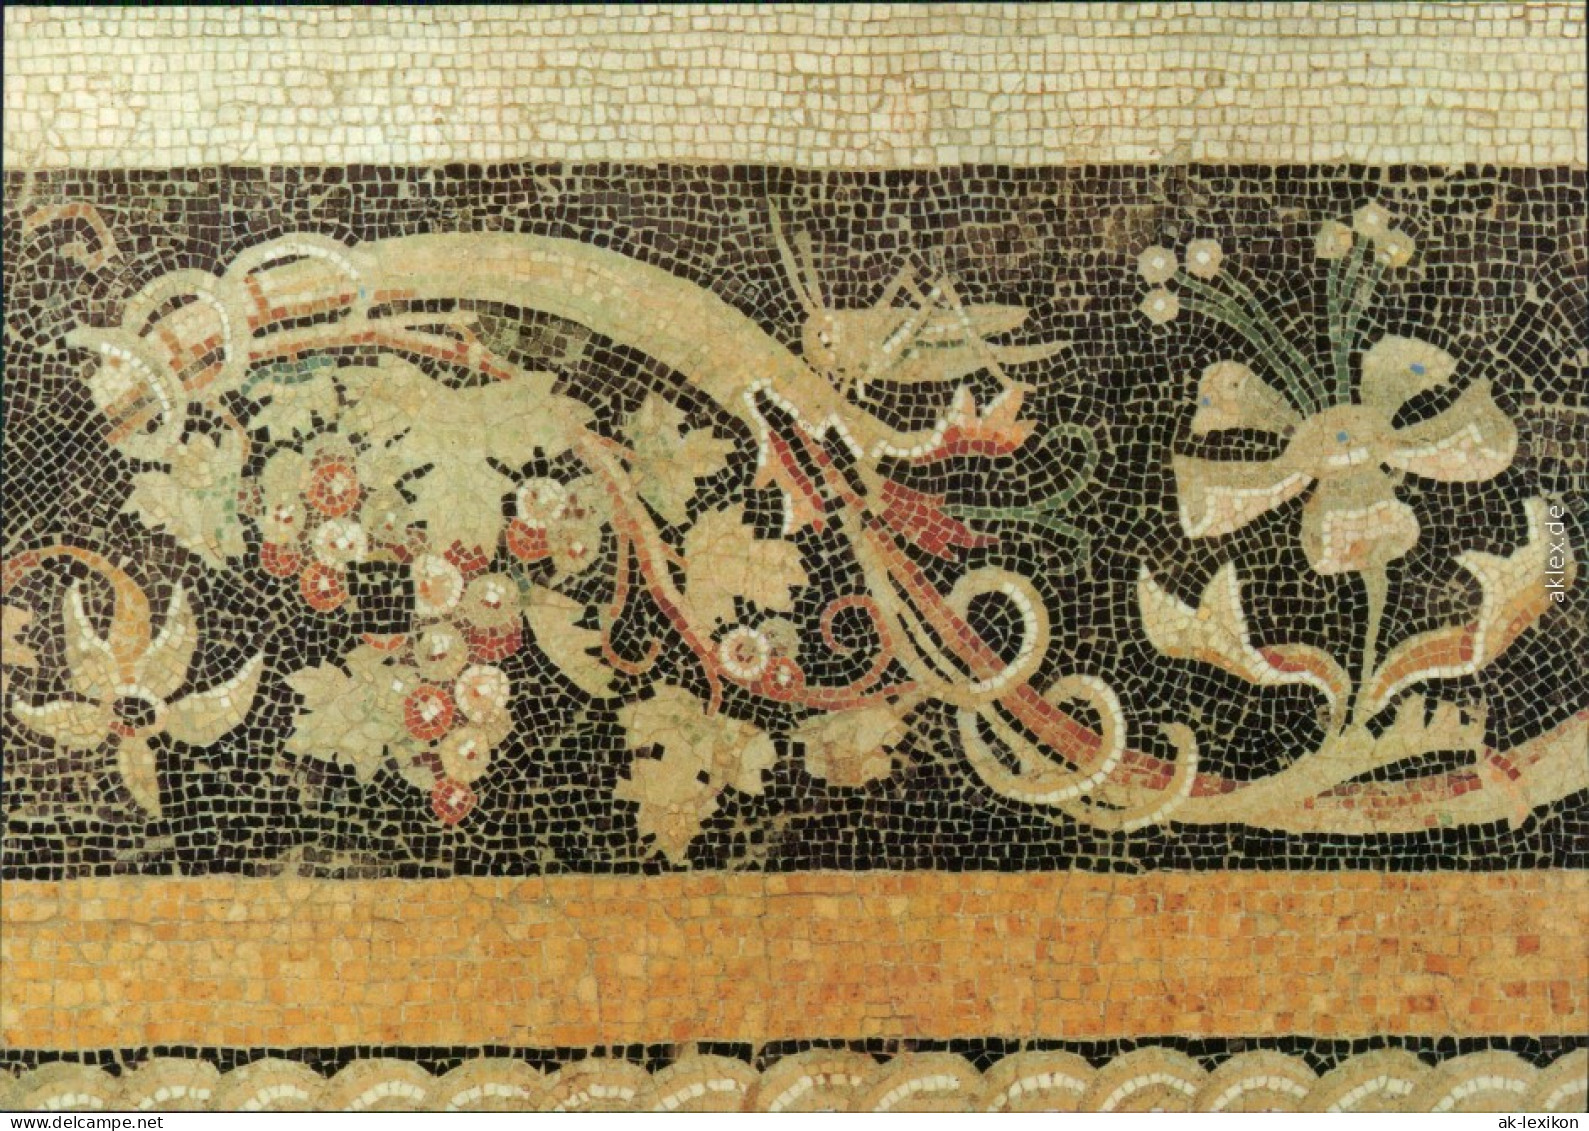 Mitte Berlin Staatliche Museen Antike-Sammlung, Mosaik Des Hephaistion    1979 - Mitte